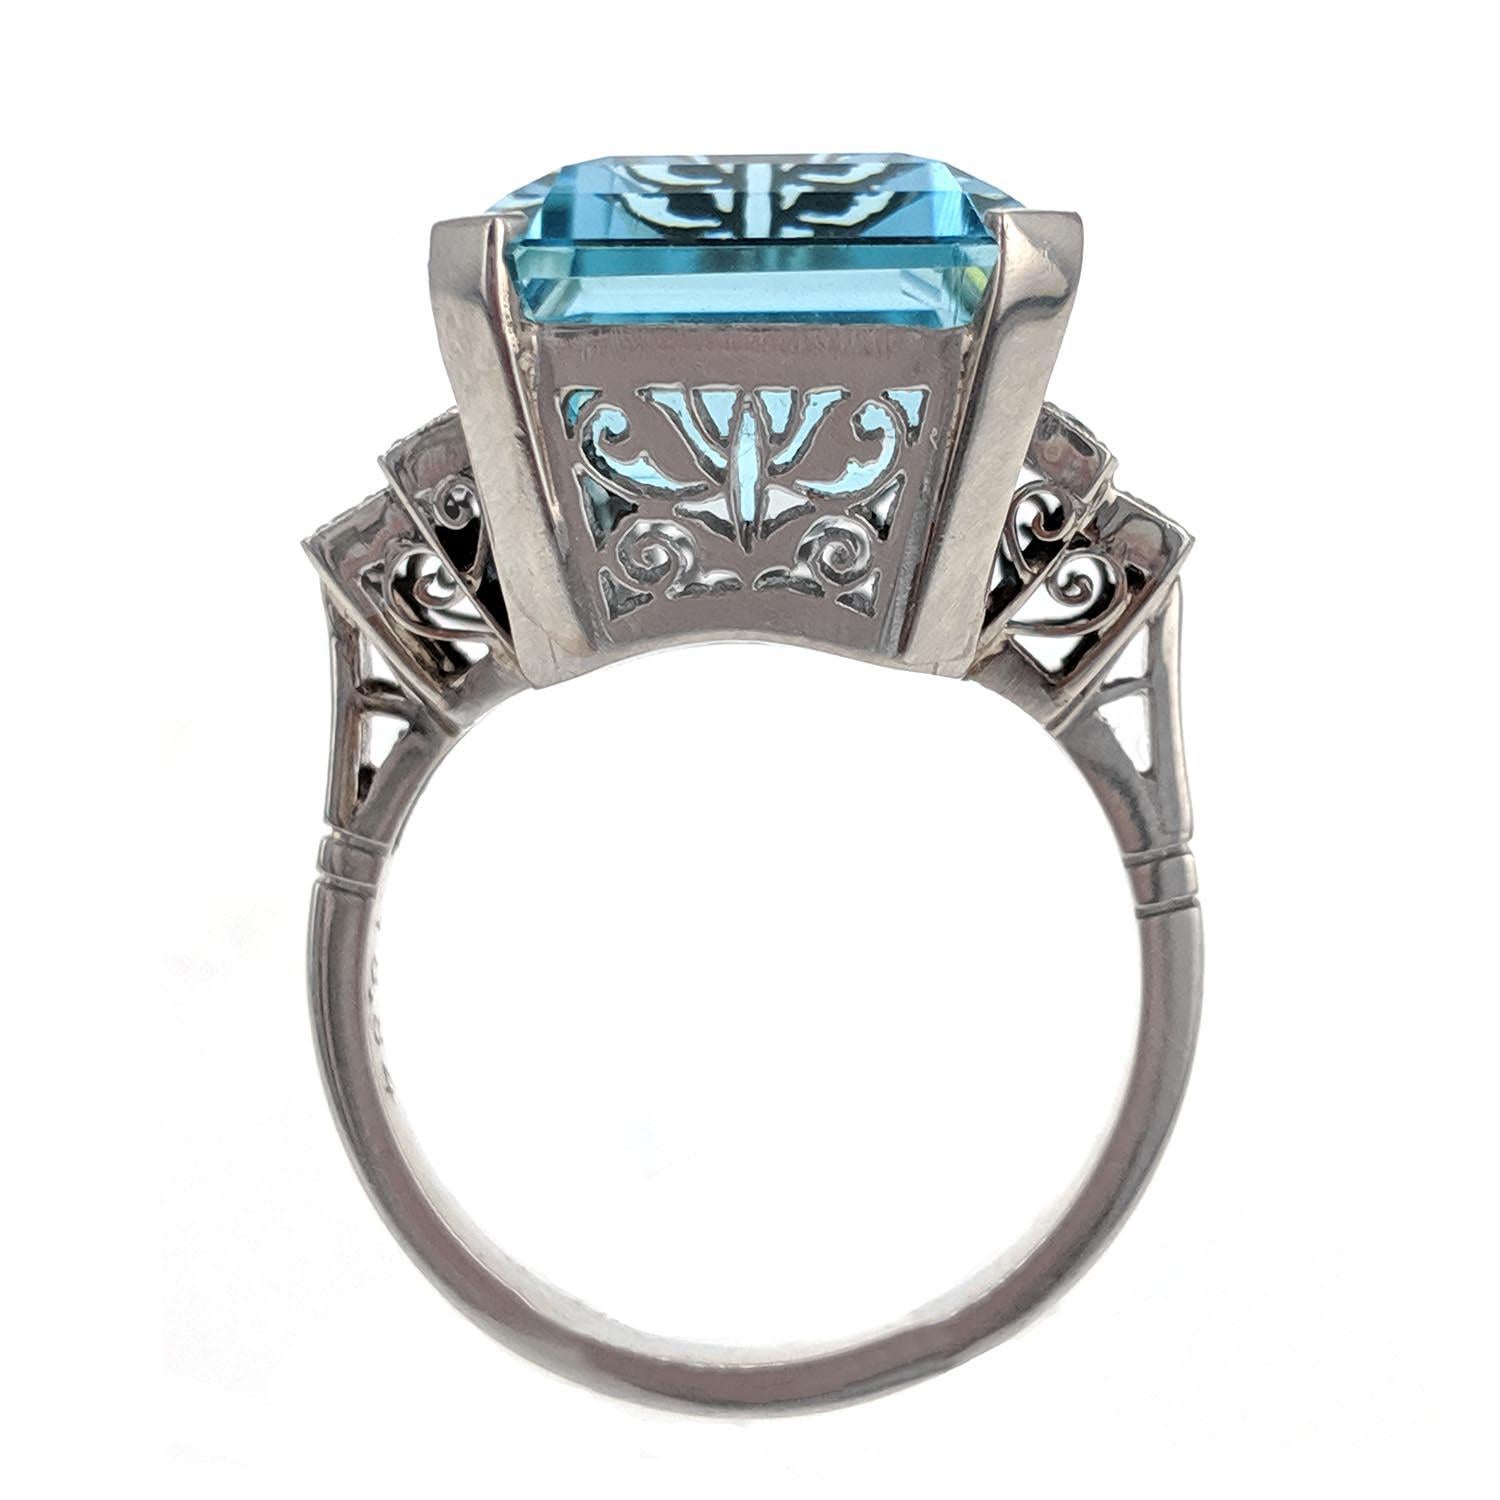 Emerald Cut Aquamarine, Diamond, and Platinum Ring